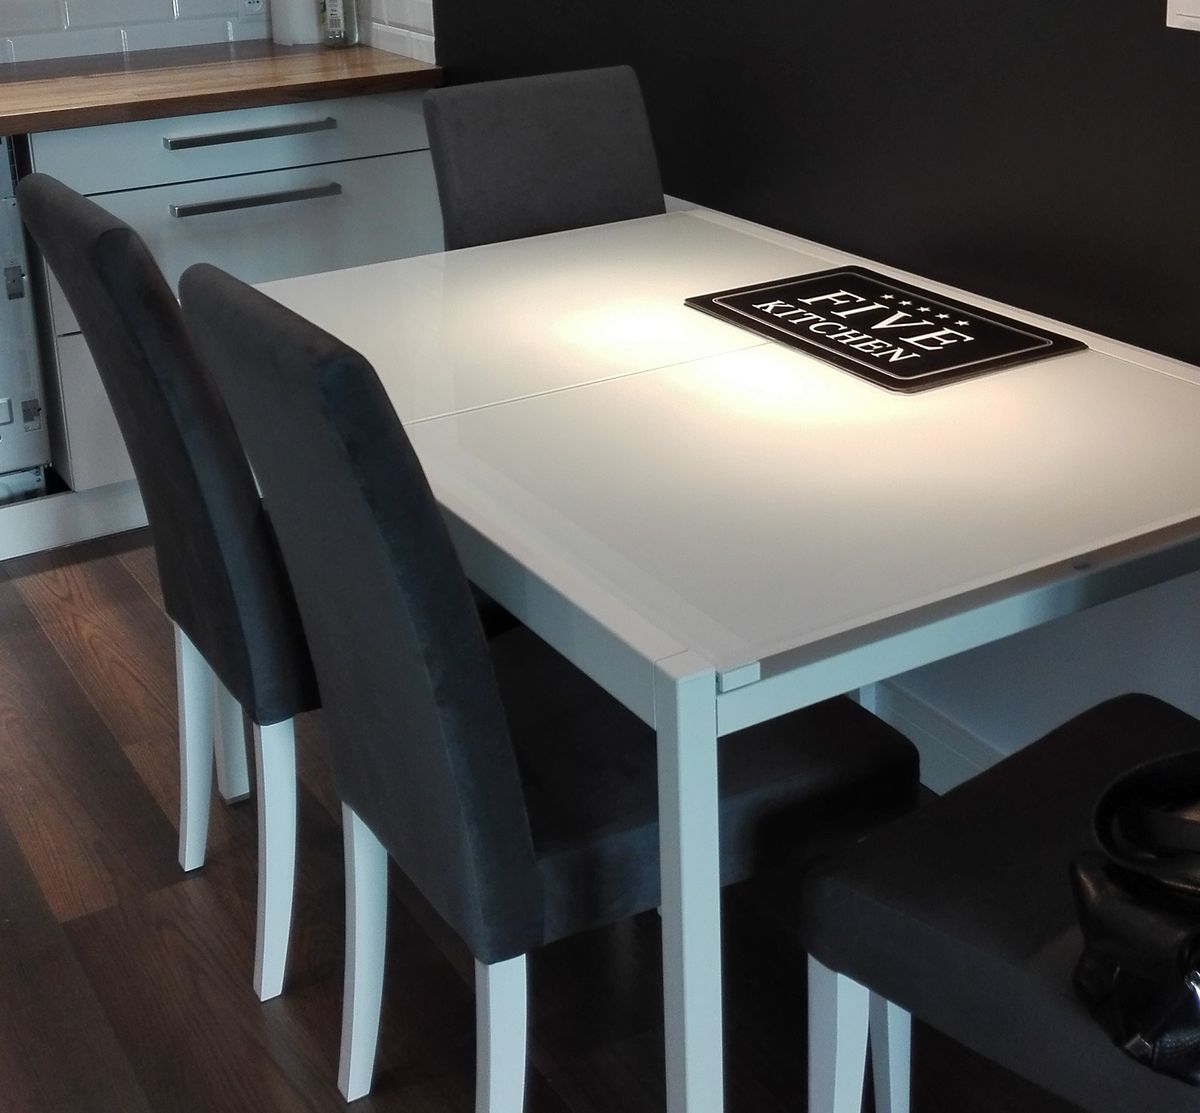 IKEA prosi klientów o zwrot popularnego stołu. Chodzi o bezpieczeństwo